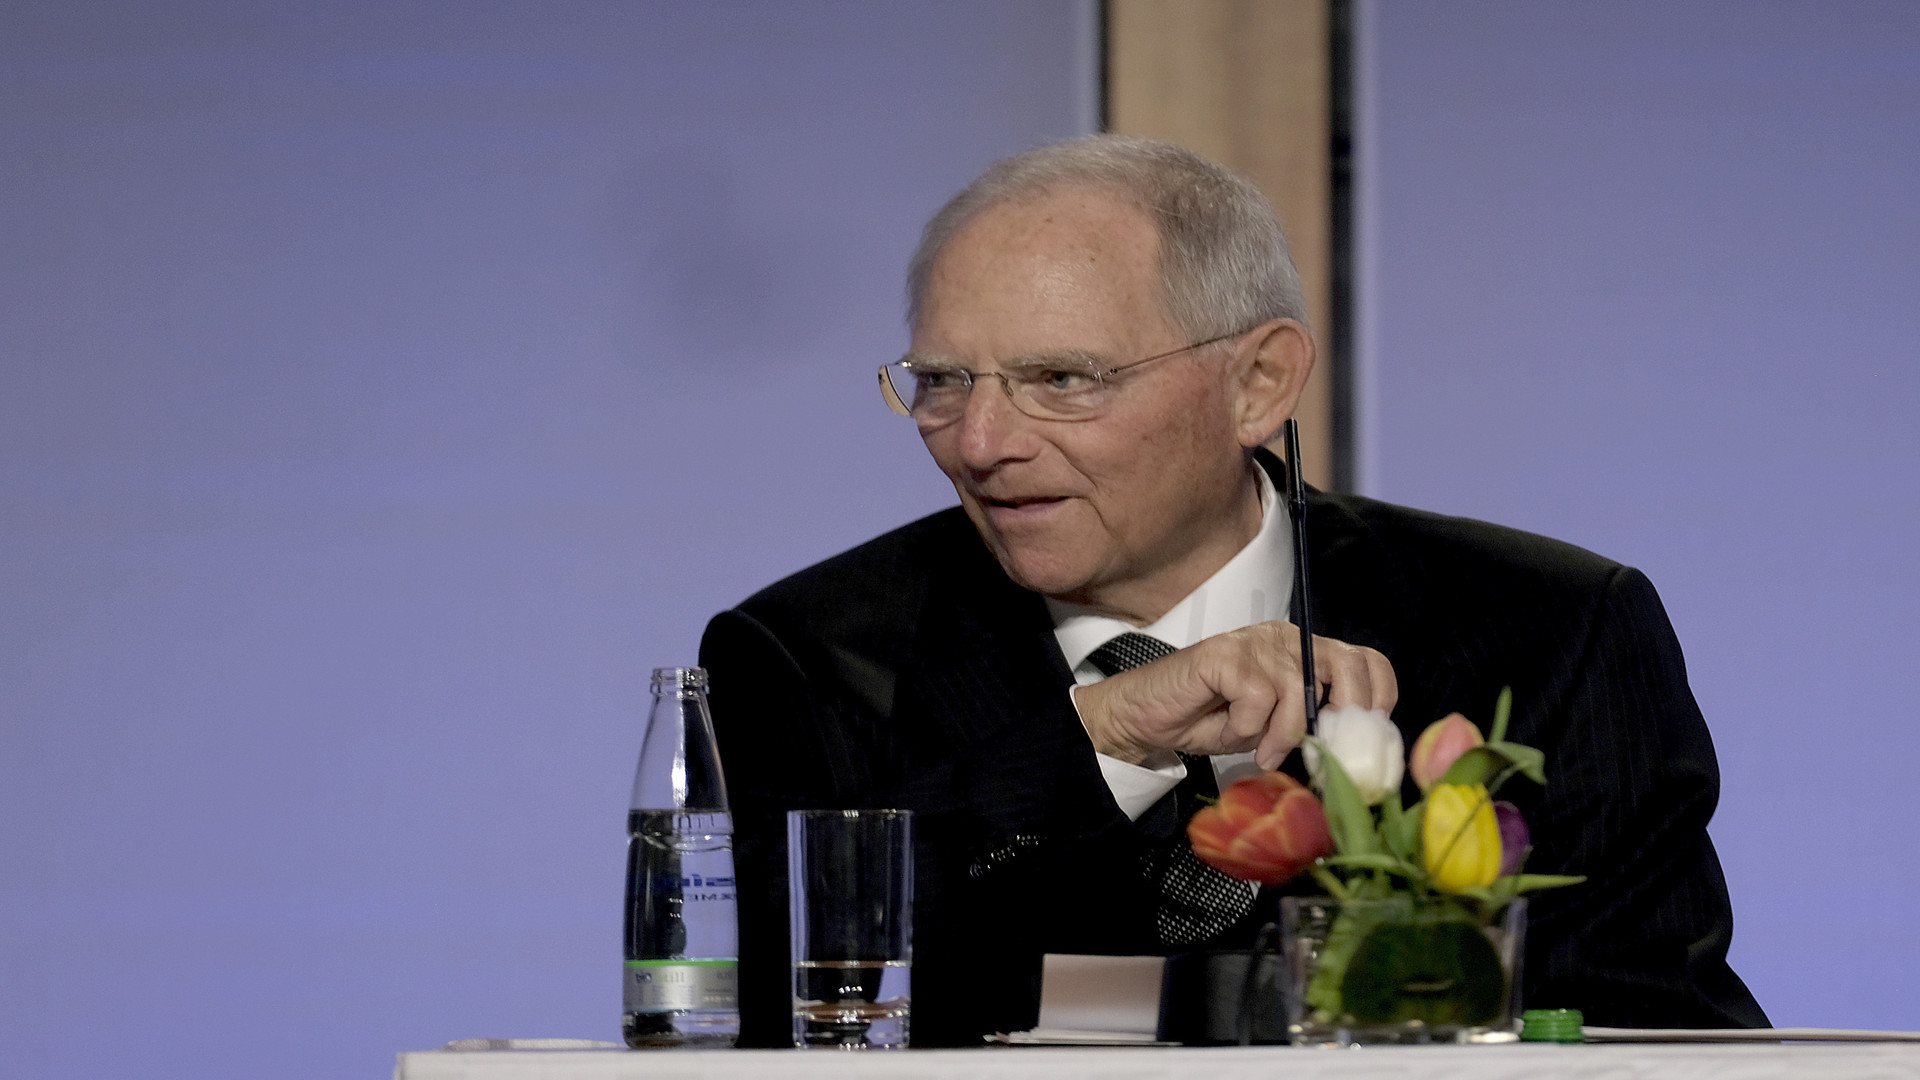  Bundestagspräsident Dr. Wolfgang Schäuble